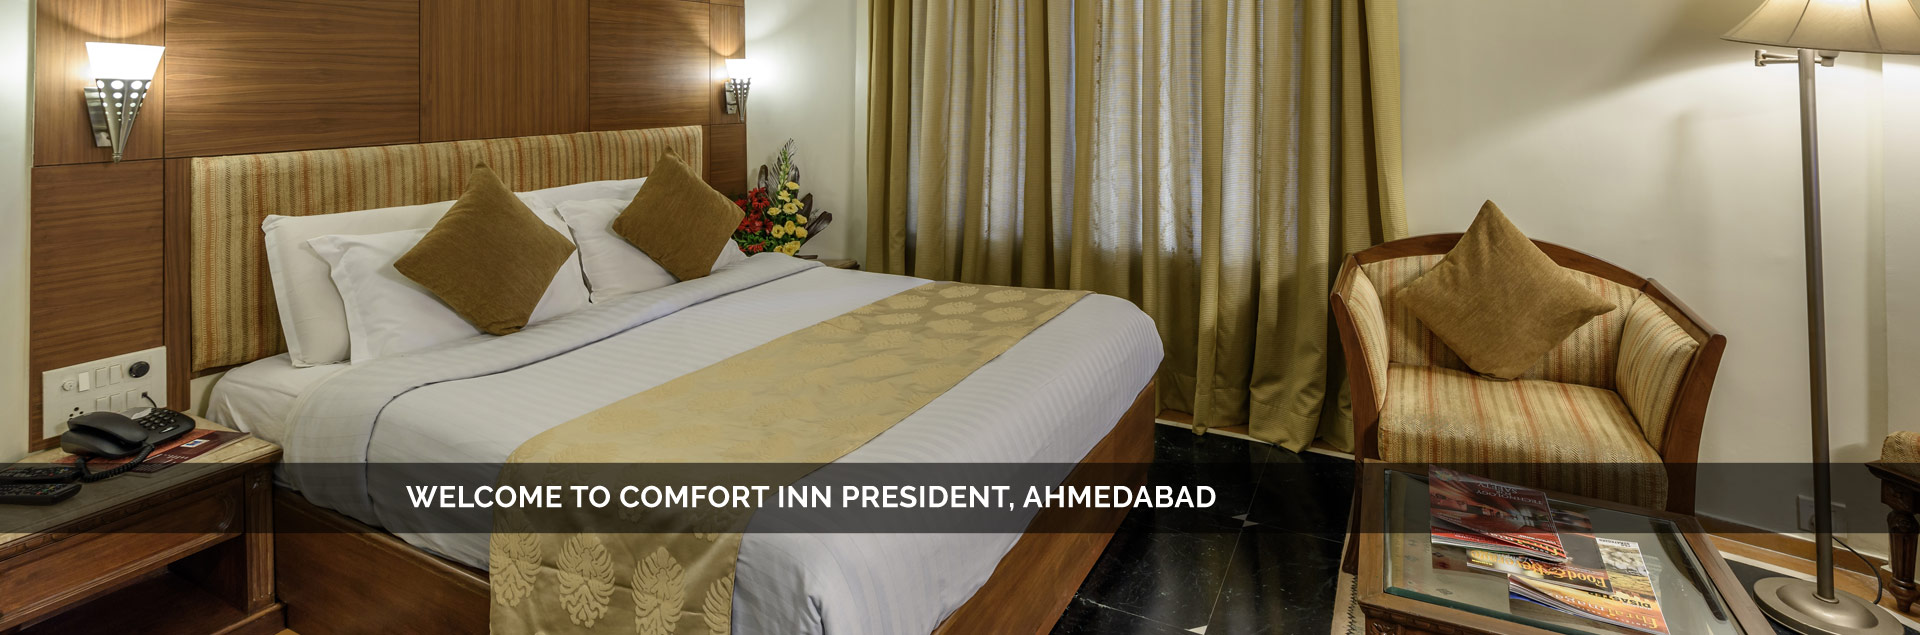 Comfort Inn President